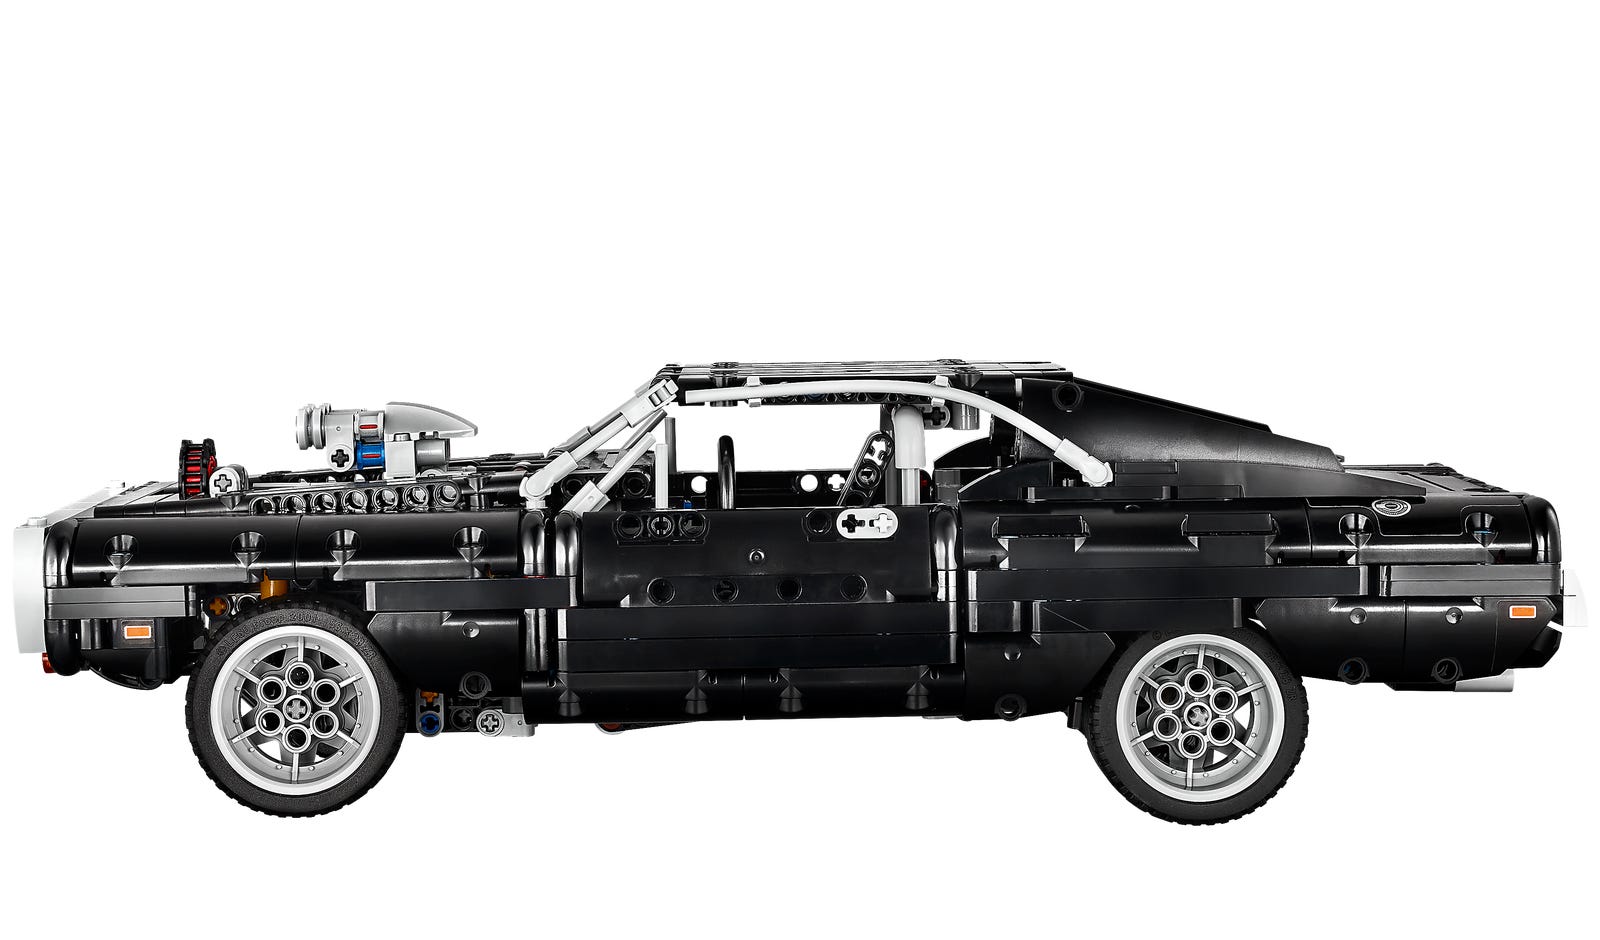 LEGO Technic Dodge Charger de Dom 42111